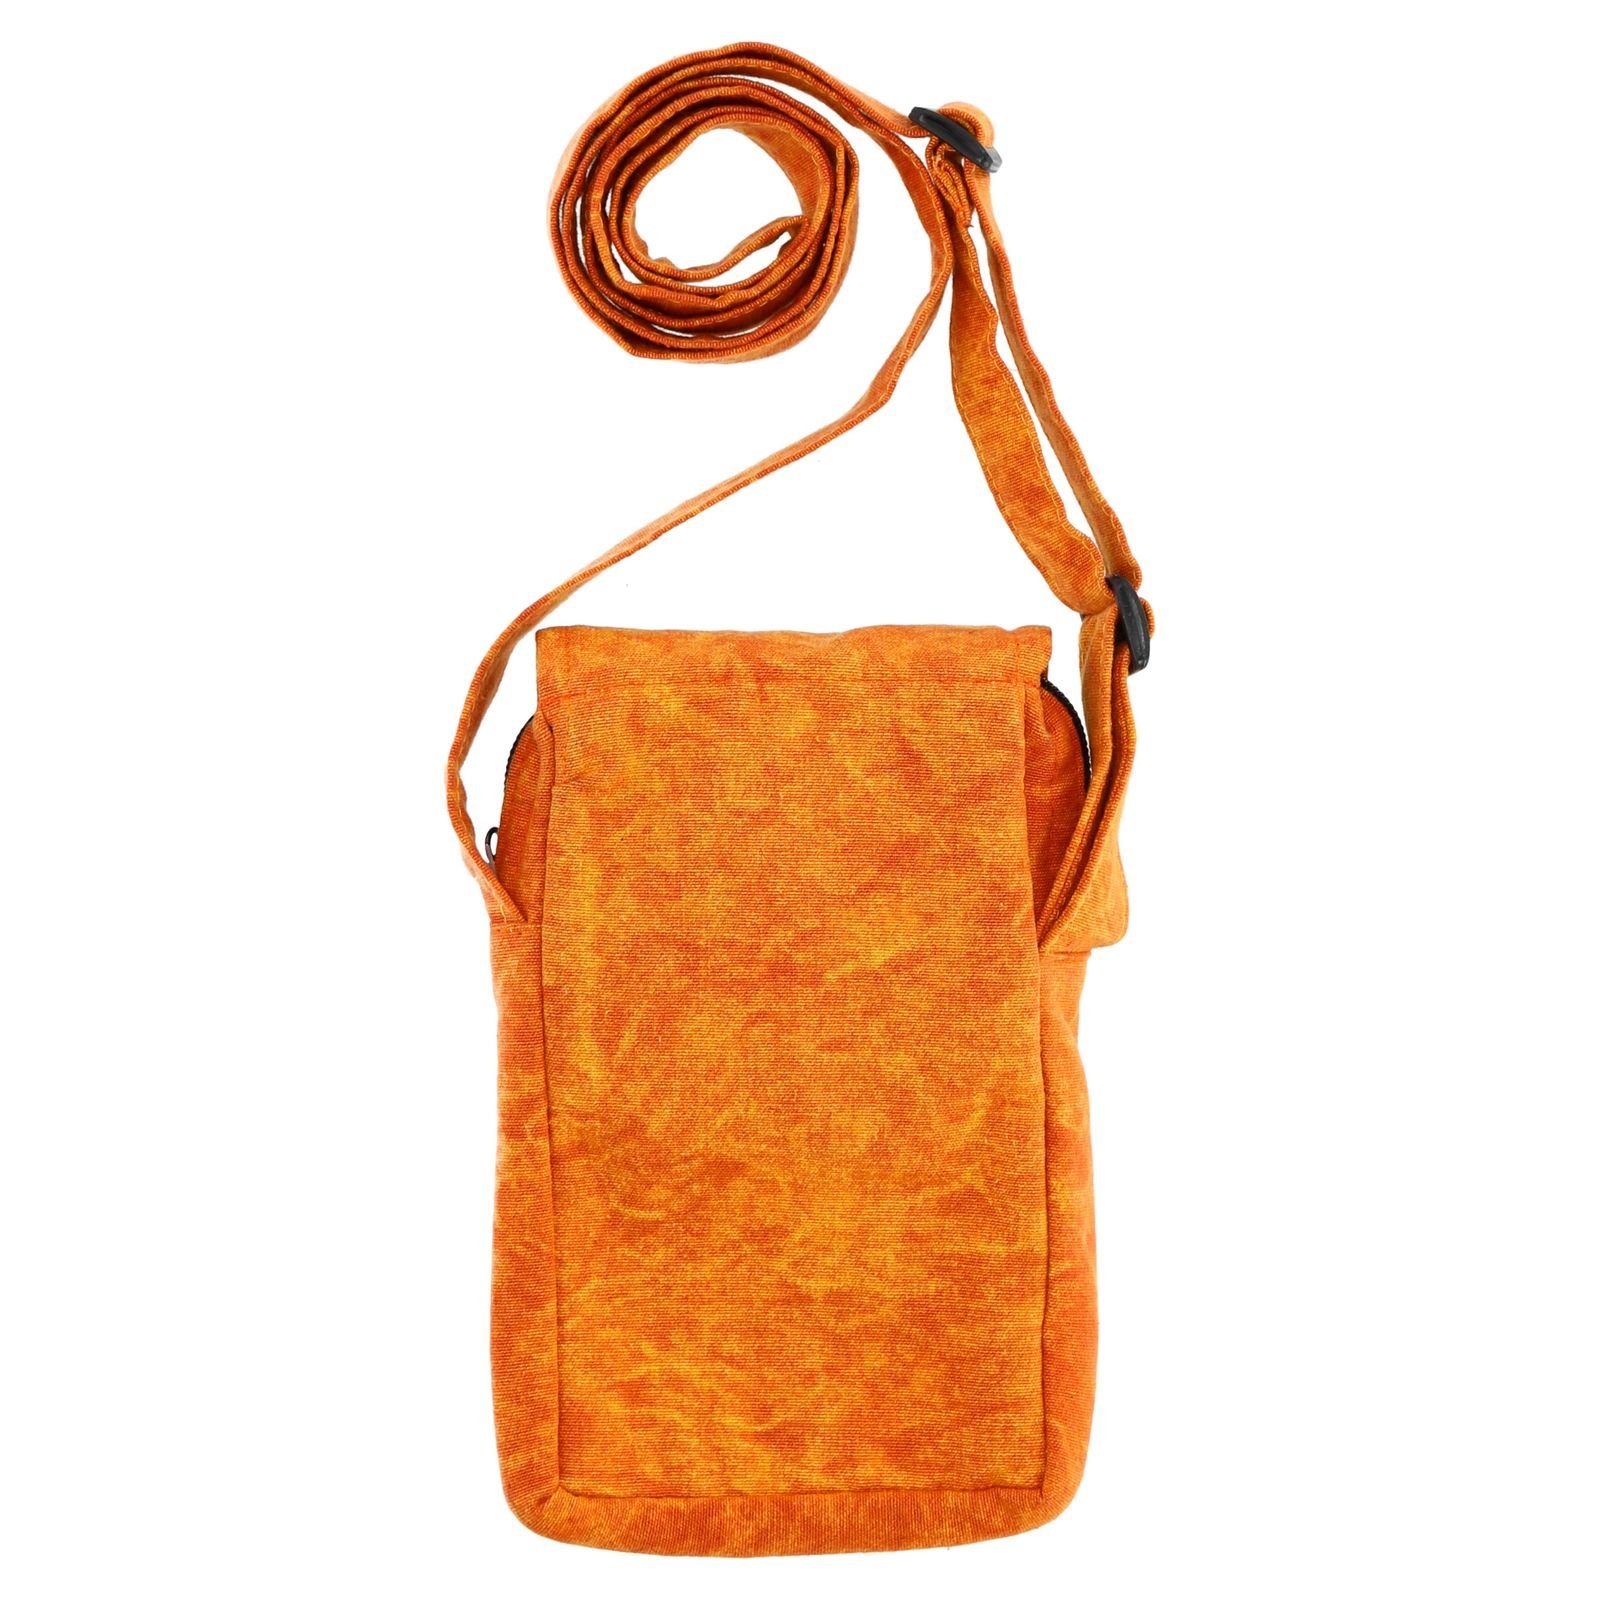 MAGIE KUNST Bag Tasche Hand Crossbody Handytasche Orange Hippie Schultertasche UND Brustbeutel Passportbag